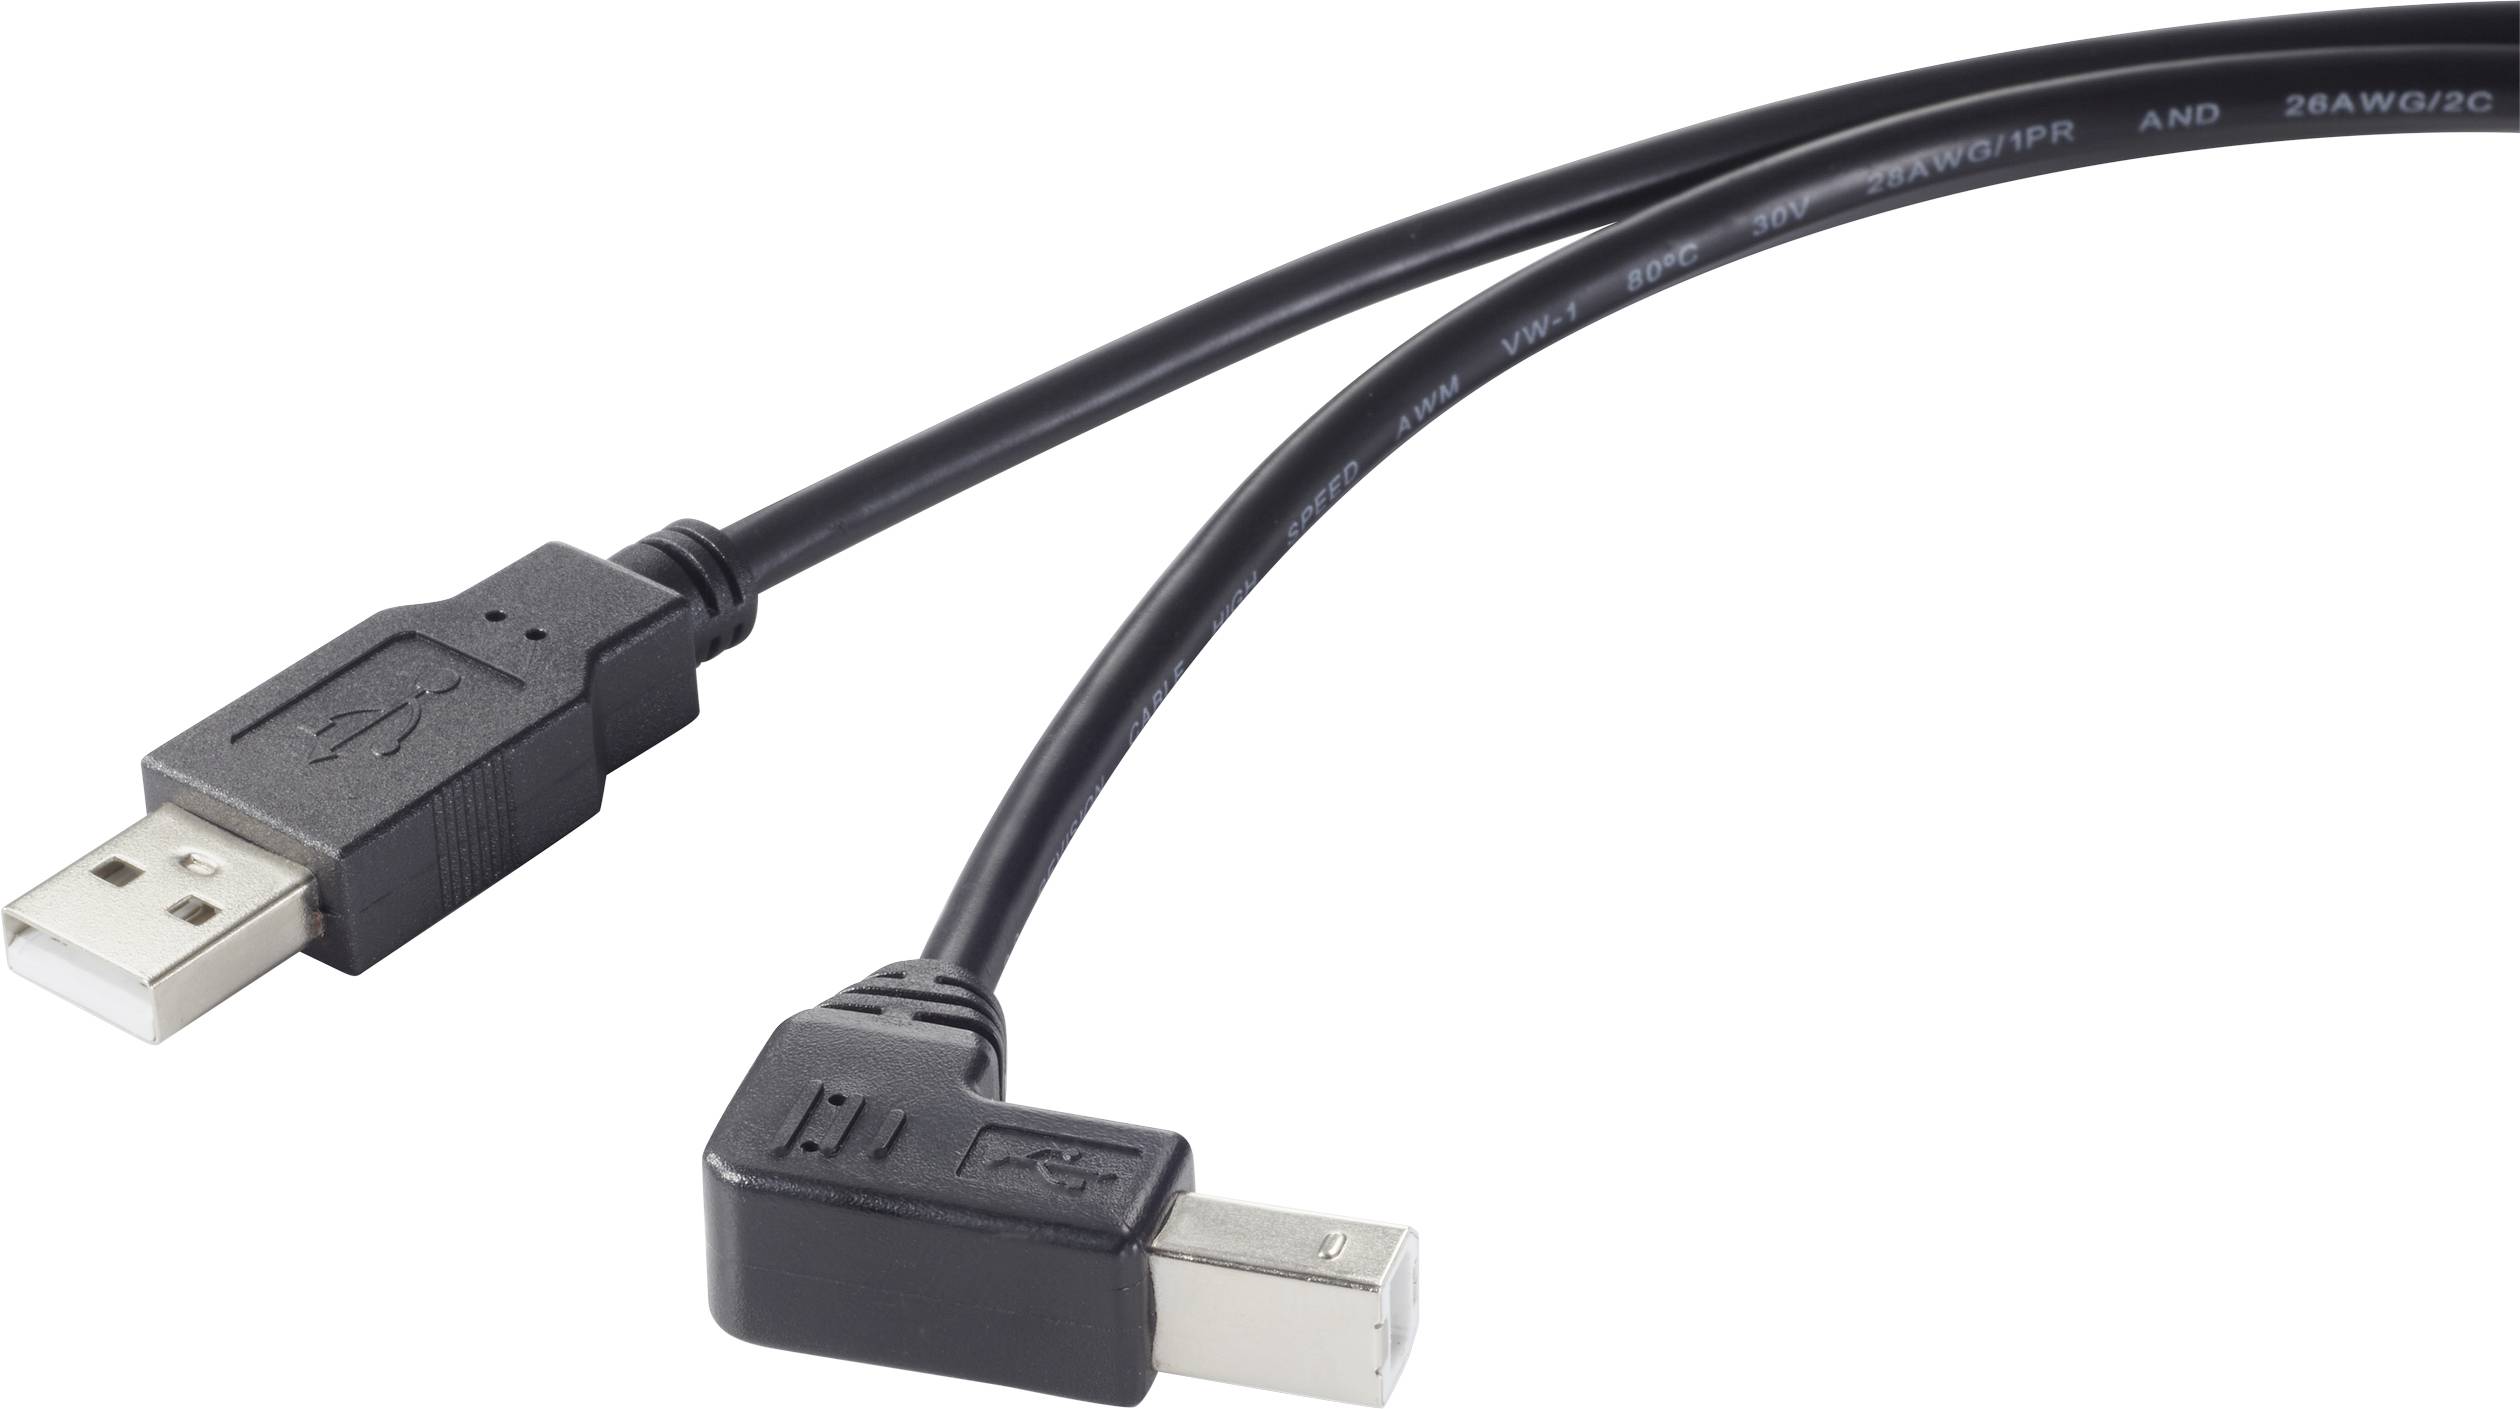 CONRAD Renkforce USB-Kabel USB 2.0 USB-A Stecker, USB-B Stecker 50.00 cm Schwarz 90° nach unten gewi